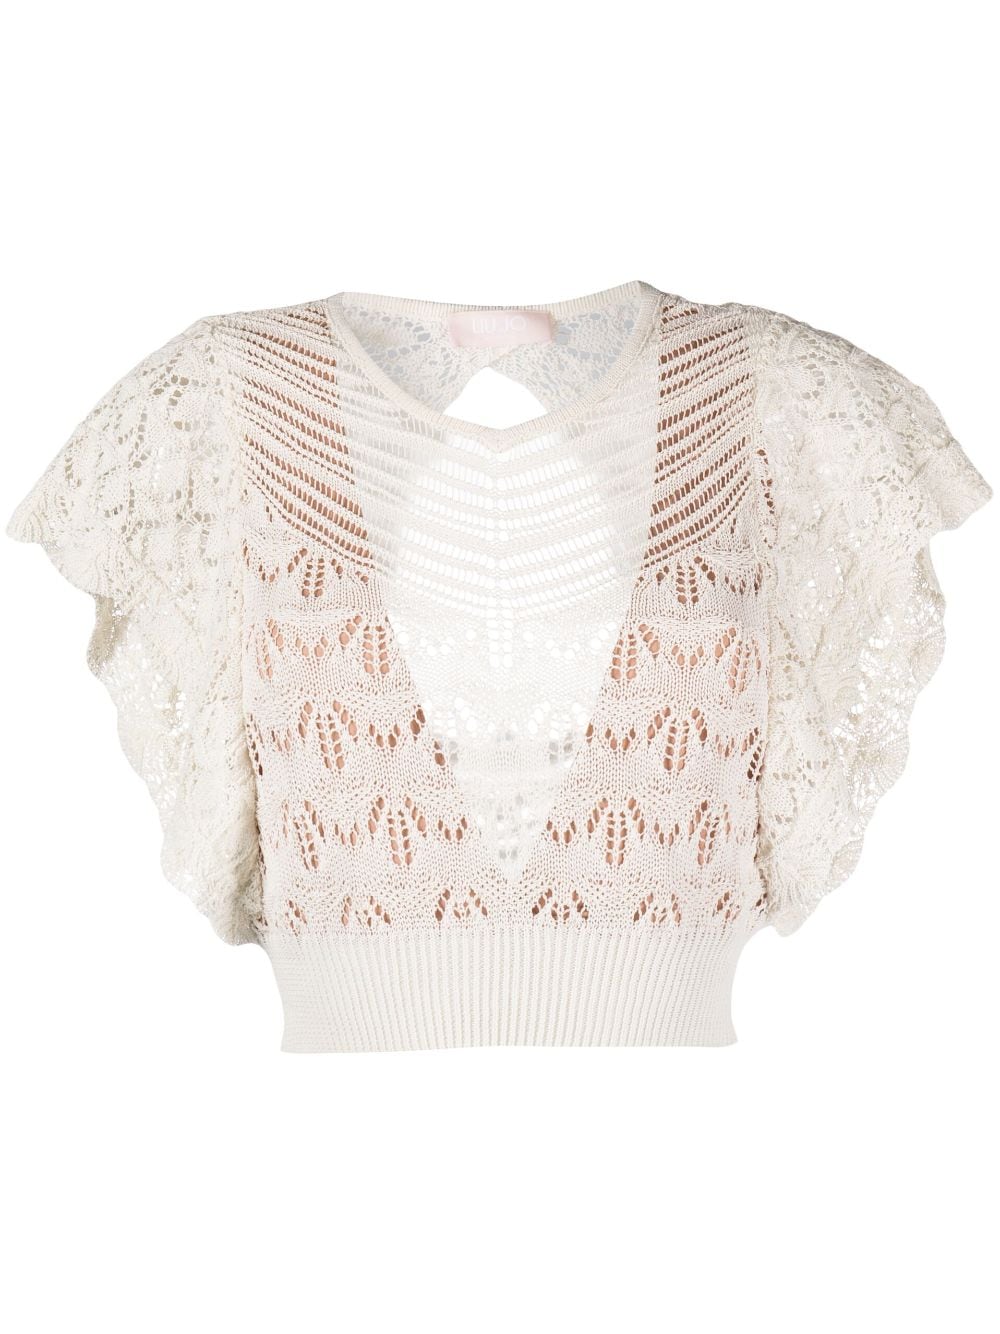 Liu •jo Crochet-knit Cropped Blouse In White